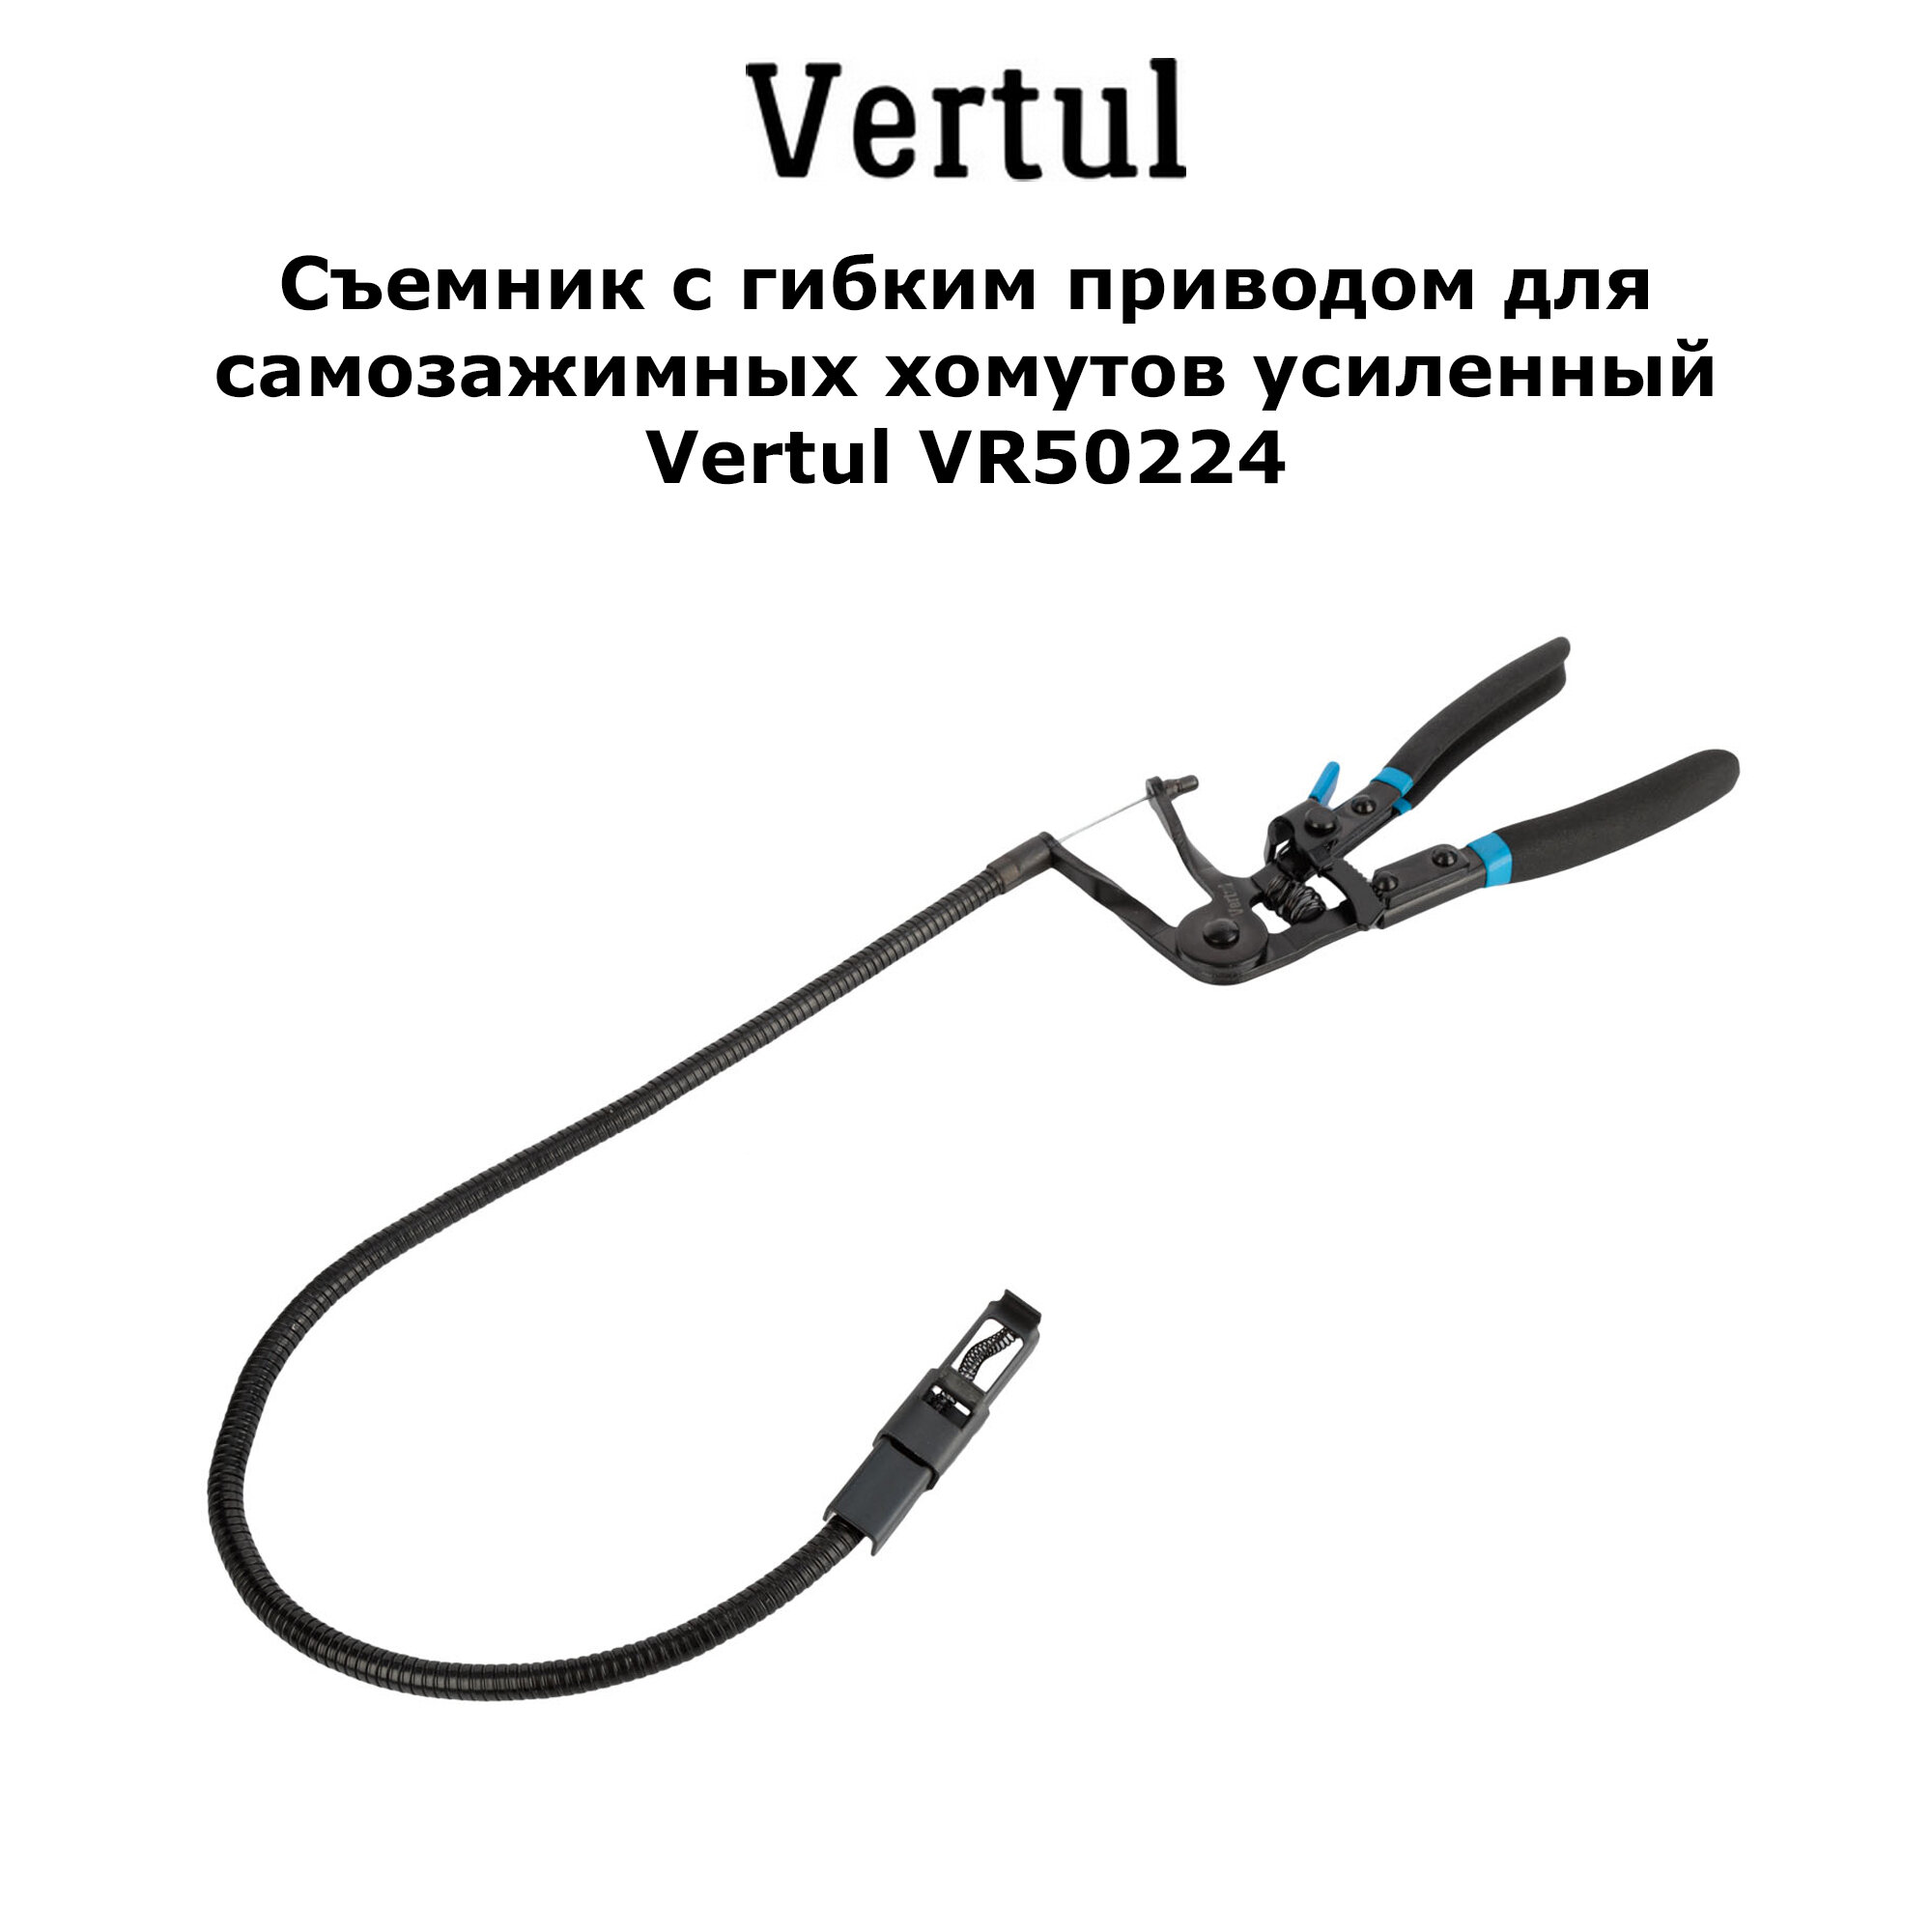 Съемник с гибким приводом для самозажимных хомутов усиленный Vertul VR50224